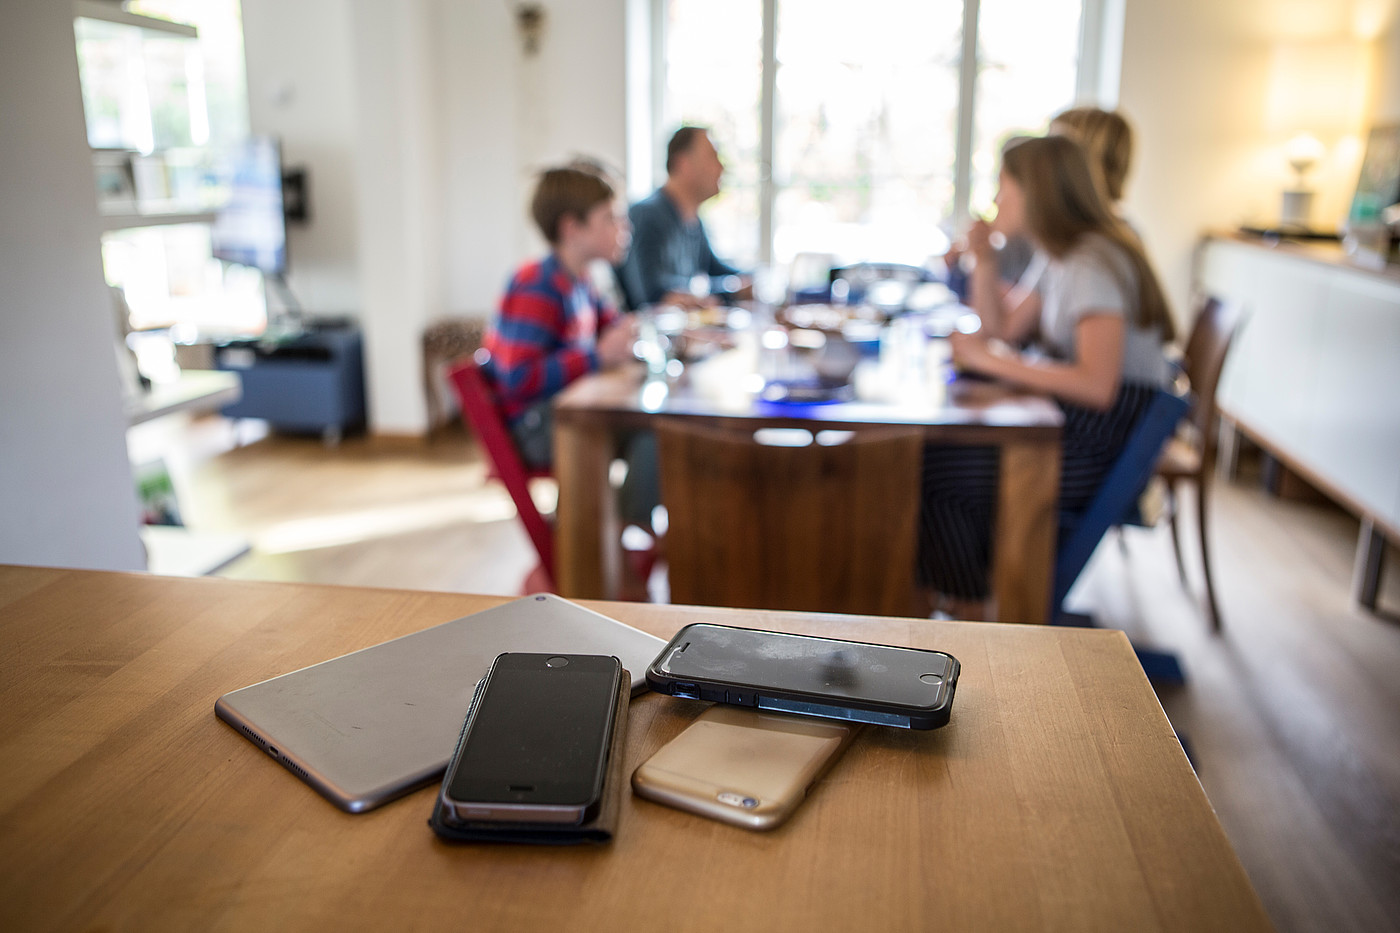 Gli smartphone sono lontani dal tavolo da pranzo mentre la famiglia sta mangiando.